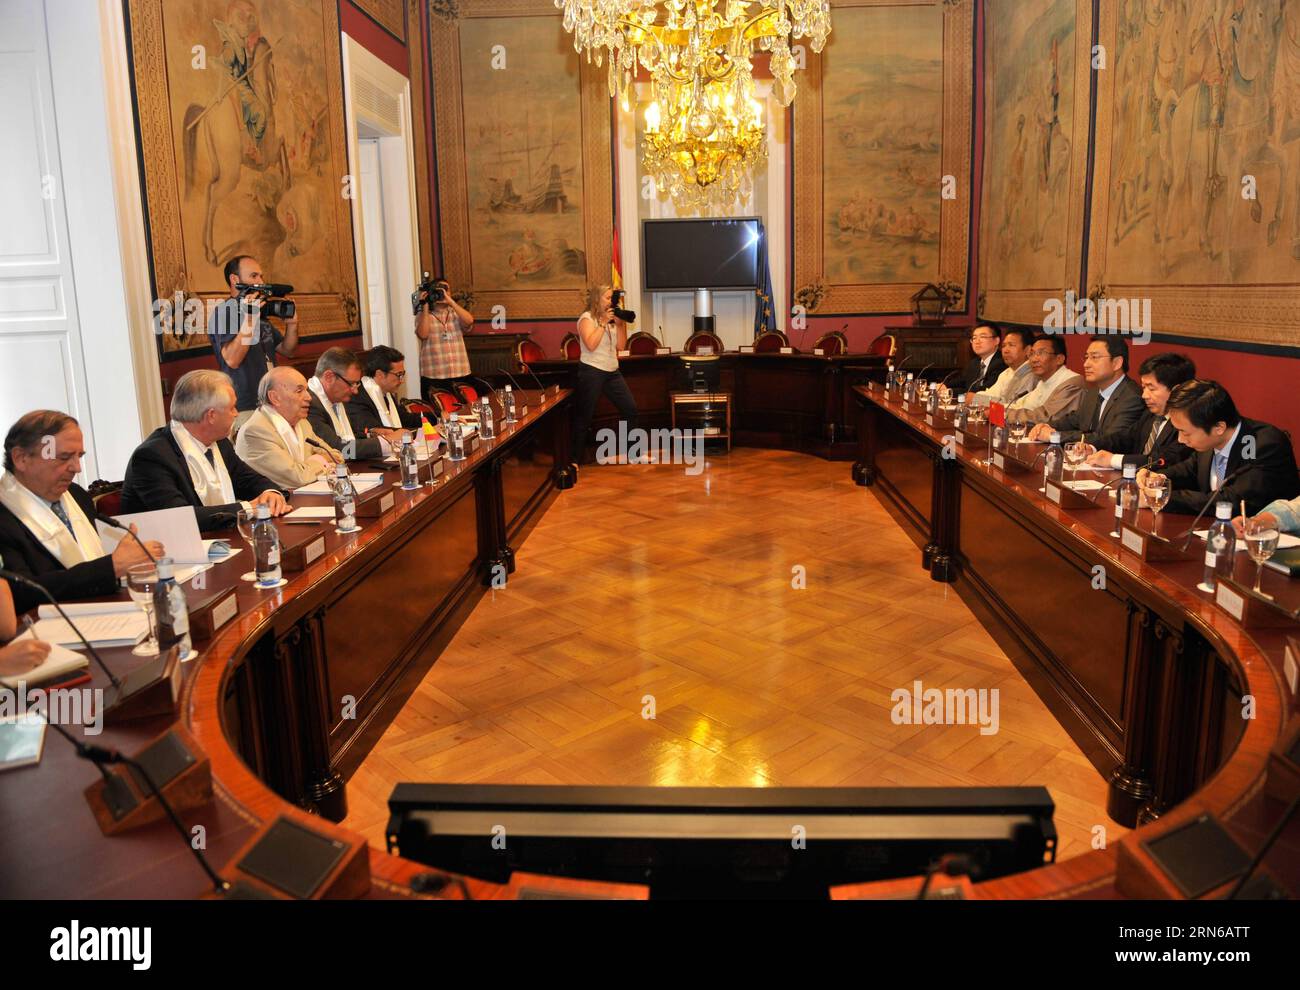 (150718) -- MADRID, - der chinesische Botschafter in Spanien LYU Fan (3. R) und Mitglieder einer Kulturdelegation aus der autonomen Region Tibet im Südwesten Chinas treffen sich am 17. Juli 2015 in Madrid (Spanien) mit Vertretern des spanischen Senats. Die Delegation nahm am Freitag an einem Seminar mit dem Ziel Teil, den Austausch mit Spanien zu fördern. ) SPANIEN-MADRID-CHINA-TREFFEN XiexHaining PUBLICATIONxNOTxINxCHN 150718 Madrid Chinesischer Botschafter in Spanien LYU-Unterstützer 3. R. und Mitglieder einer Kulturdelegation aus der autonomen Region Südwestchina S Tibet treffen sich mit Vertretern des spanischen Senats in Madrid S Stockfoto